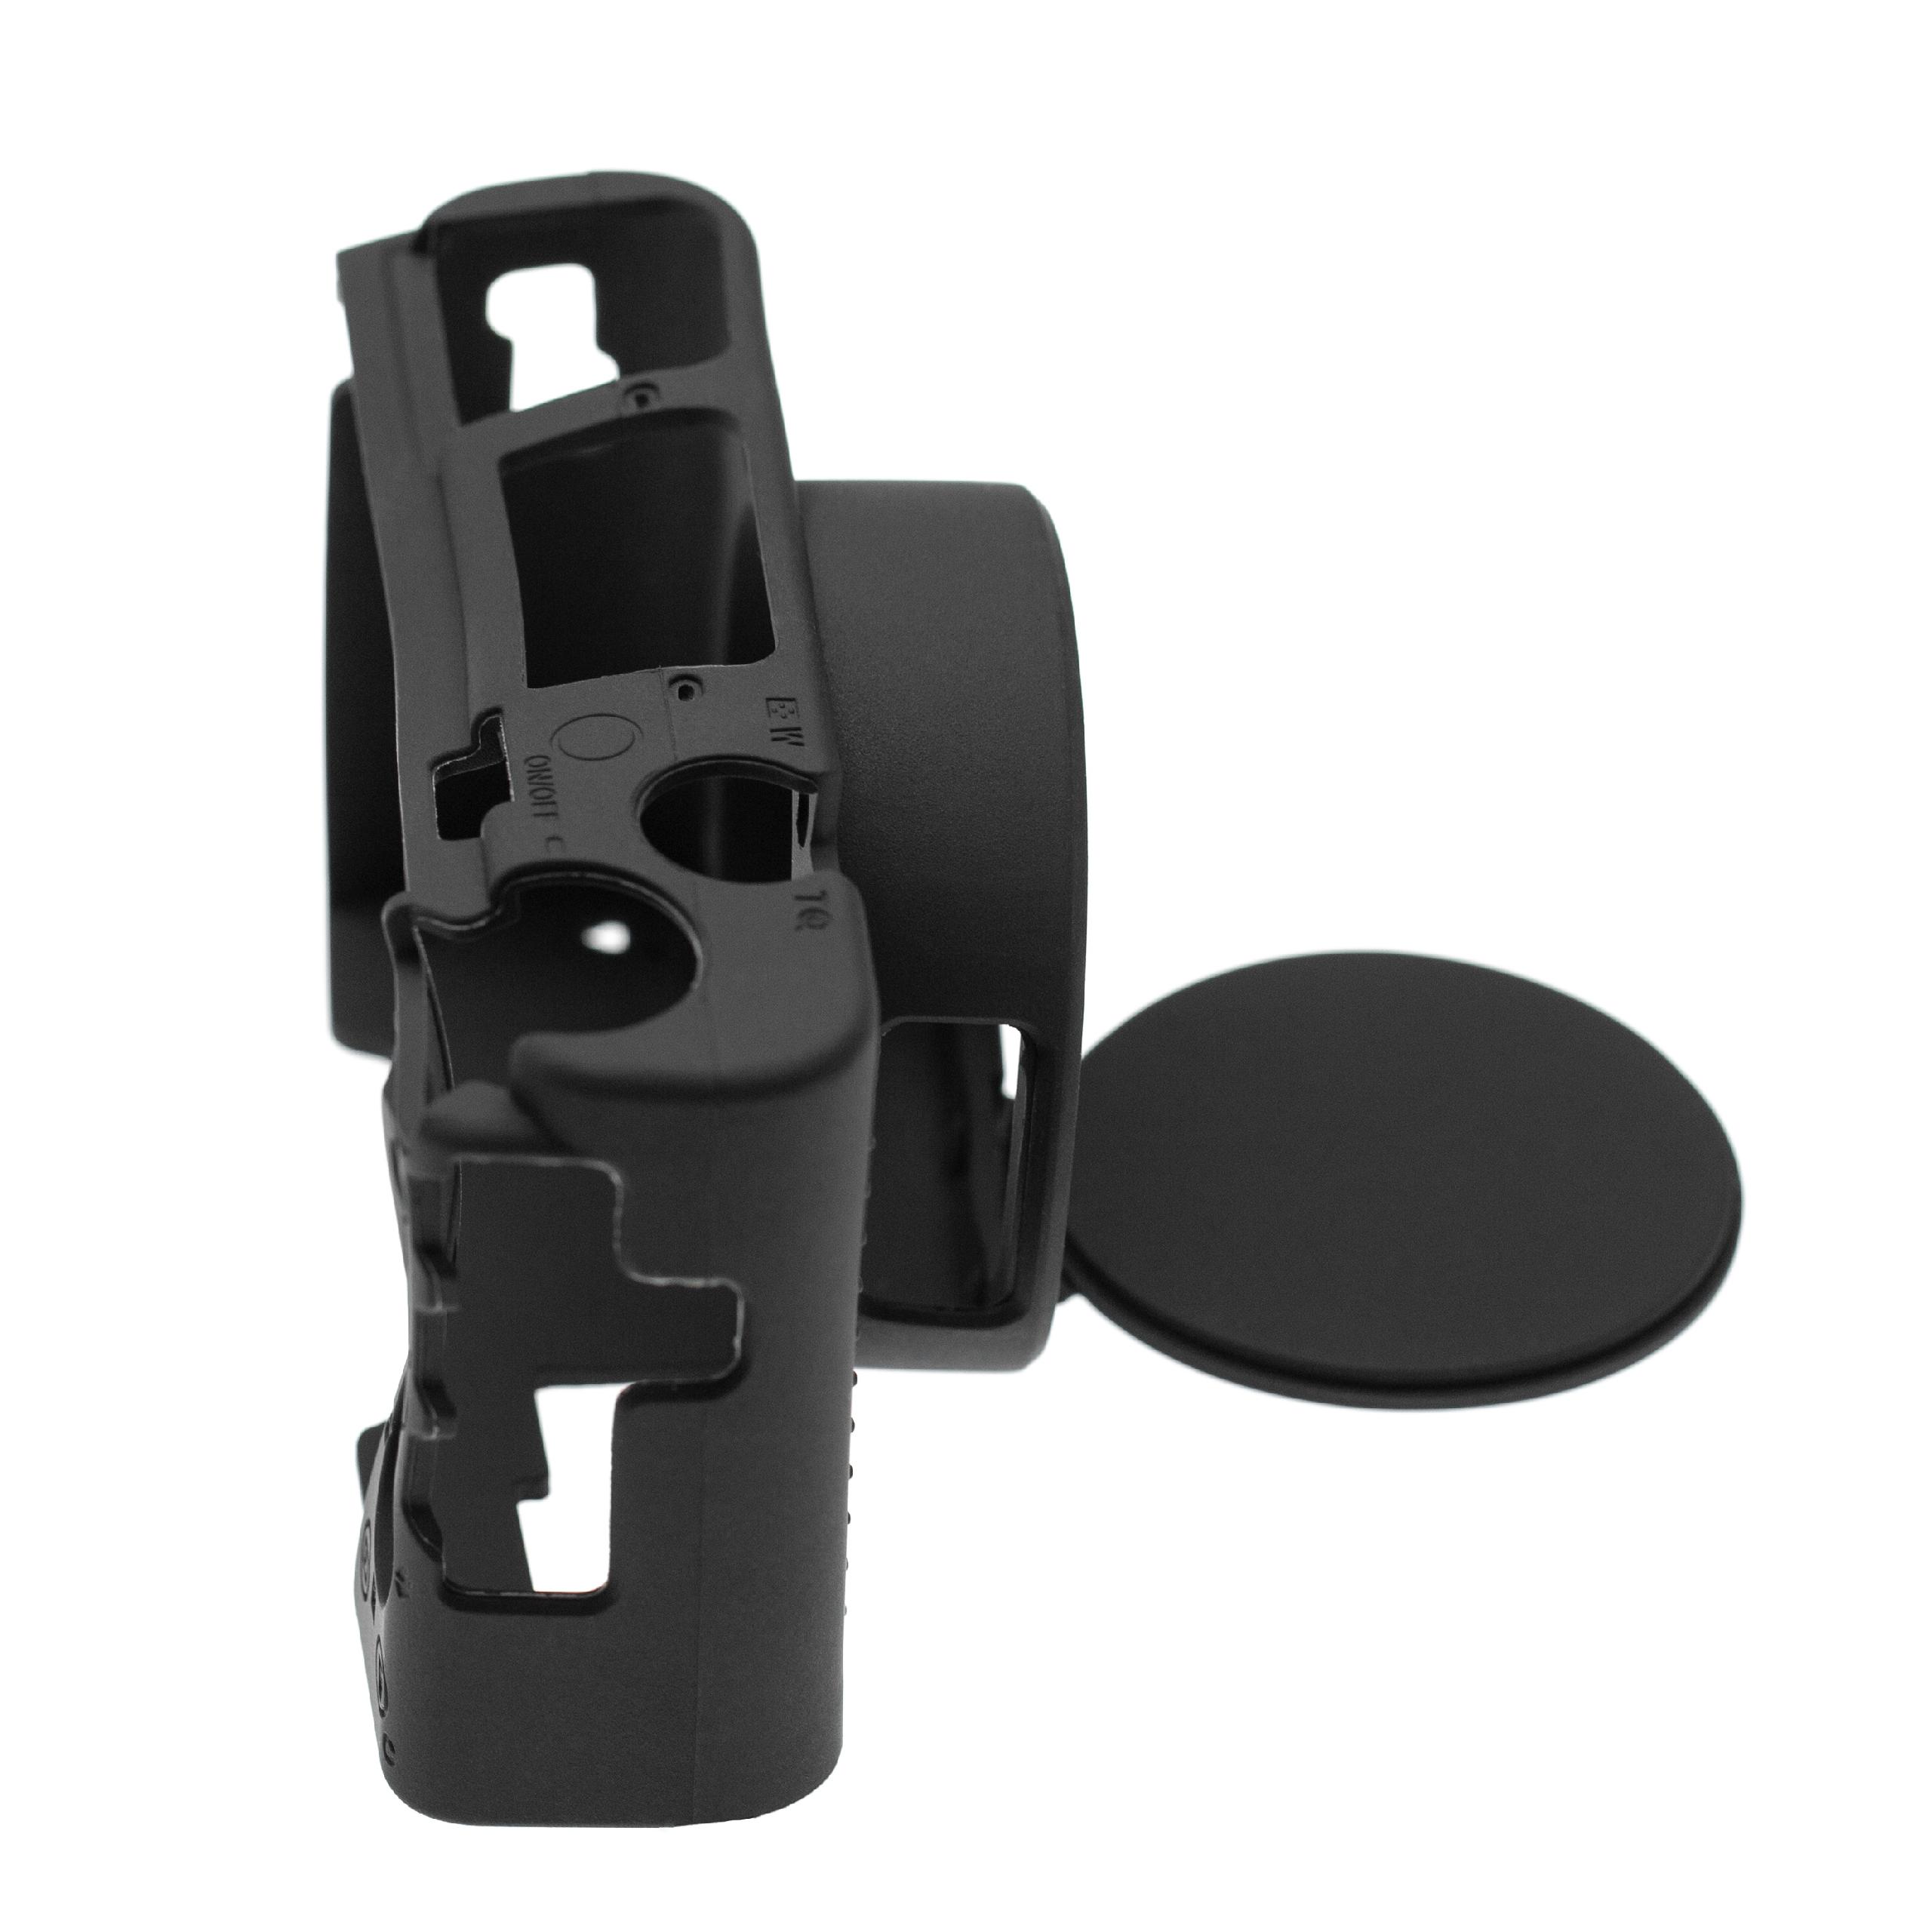 Funda protectora compatible con cámaras Sony Cybershot DSC-RX100M7 - silicona, negro, protección extra lente